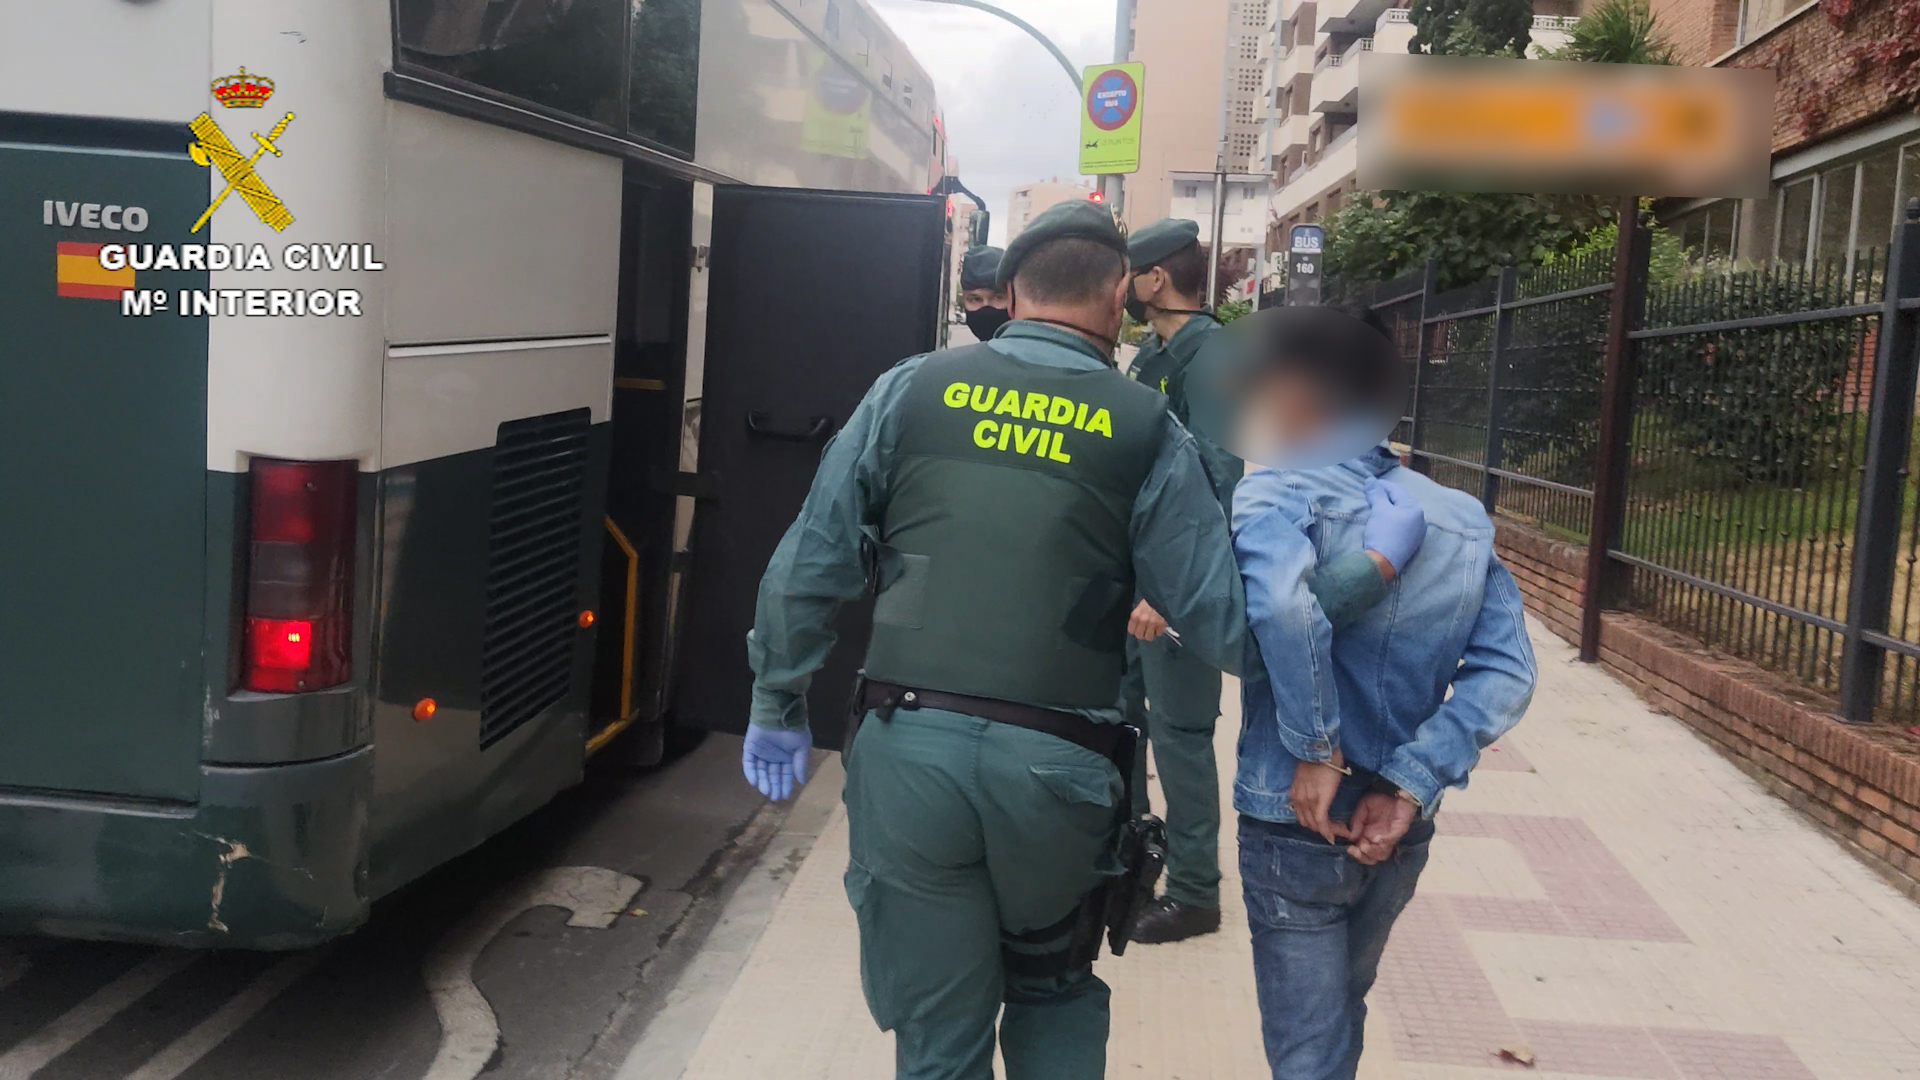 los detenidos fueron trasladados a la Comandancia de la Guardia Civil en Guadalajara.